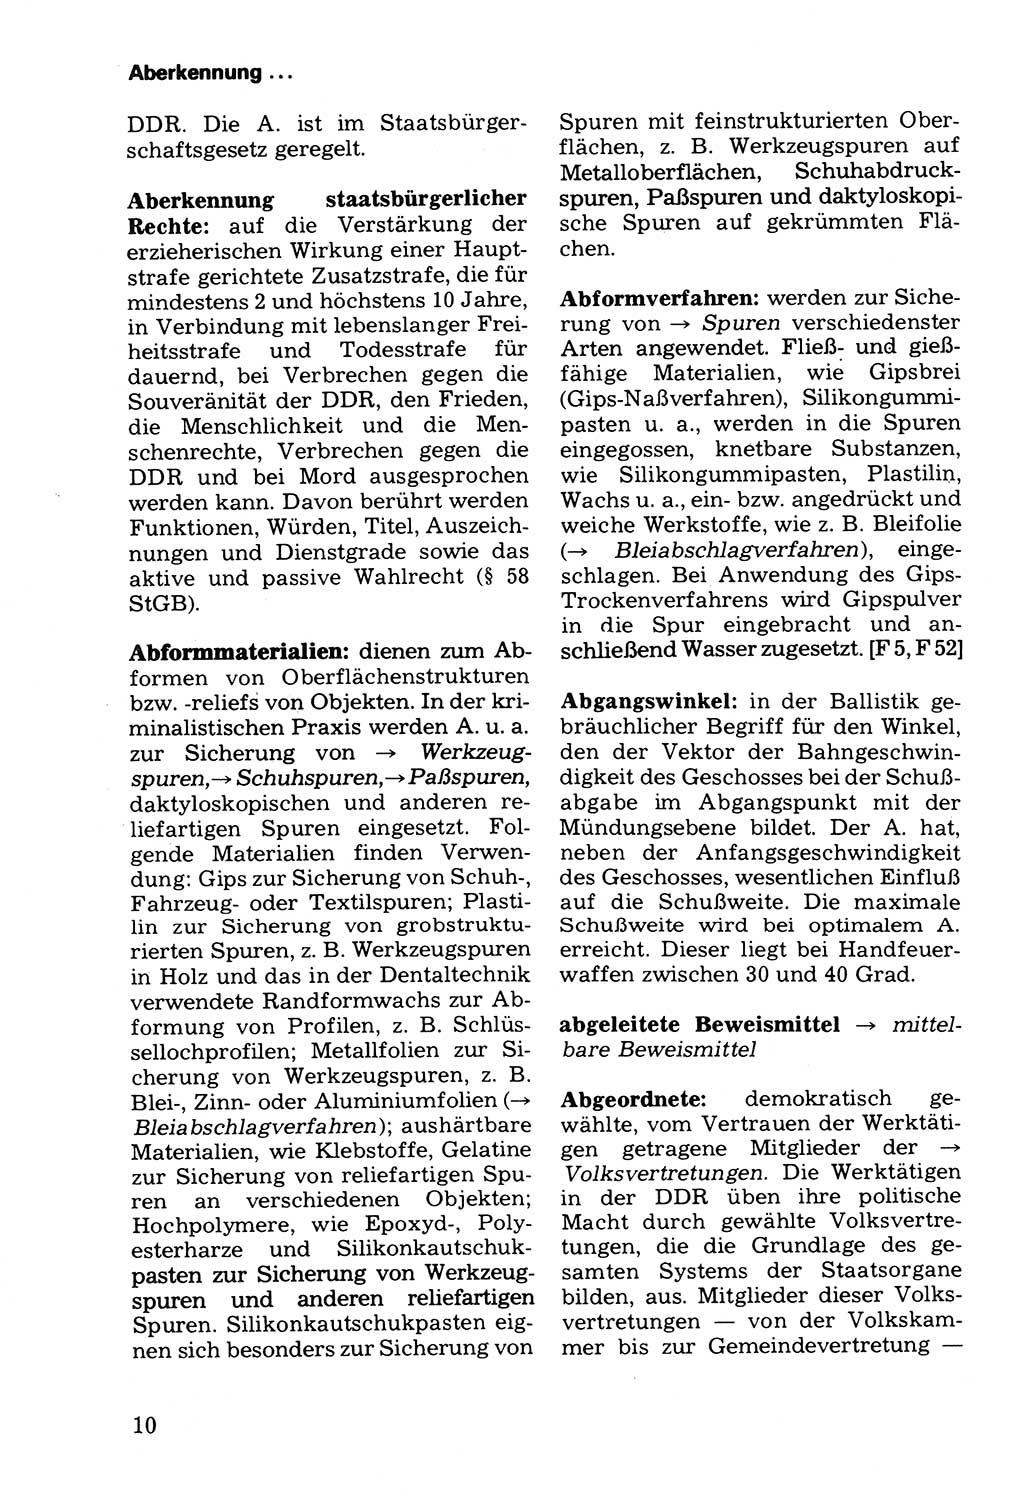 Wörterbuch der sozialistischen Kriminalistik [Deutsche Demokratische Republik (DDR)] 1981, Seite 10 (Wb. soz. Krim. DDR 1981, S. 10)